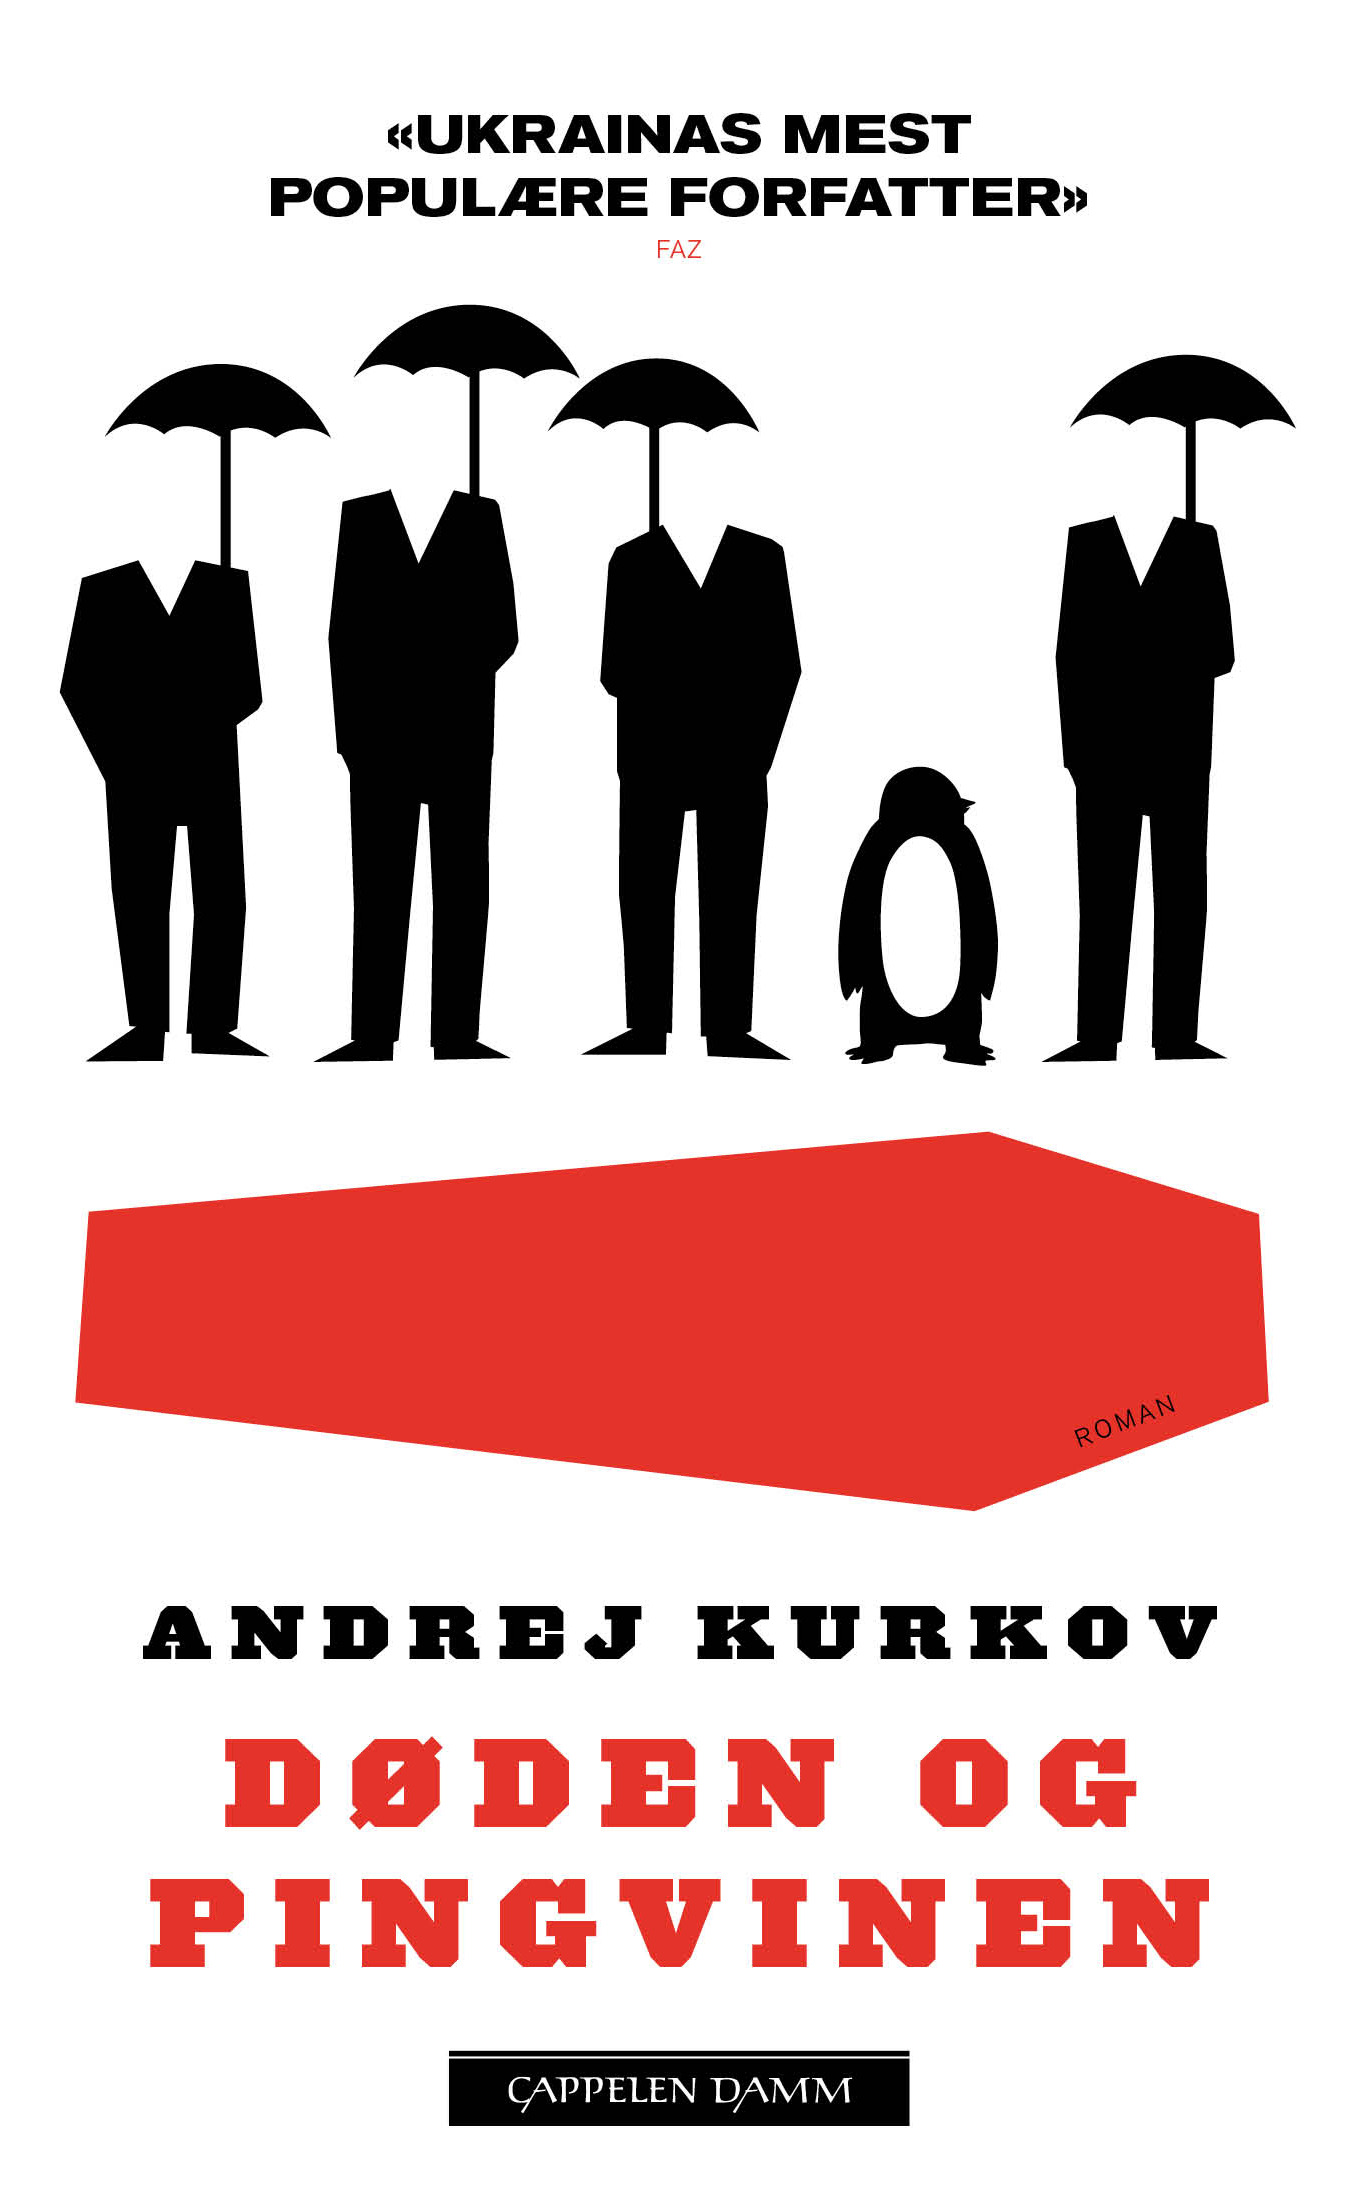 Andrey Kurkov: Døden og pingvinen (2013, Cappelen Damm)